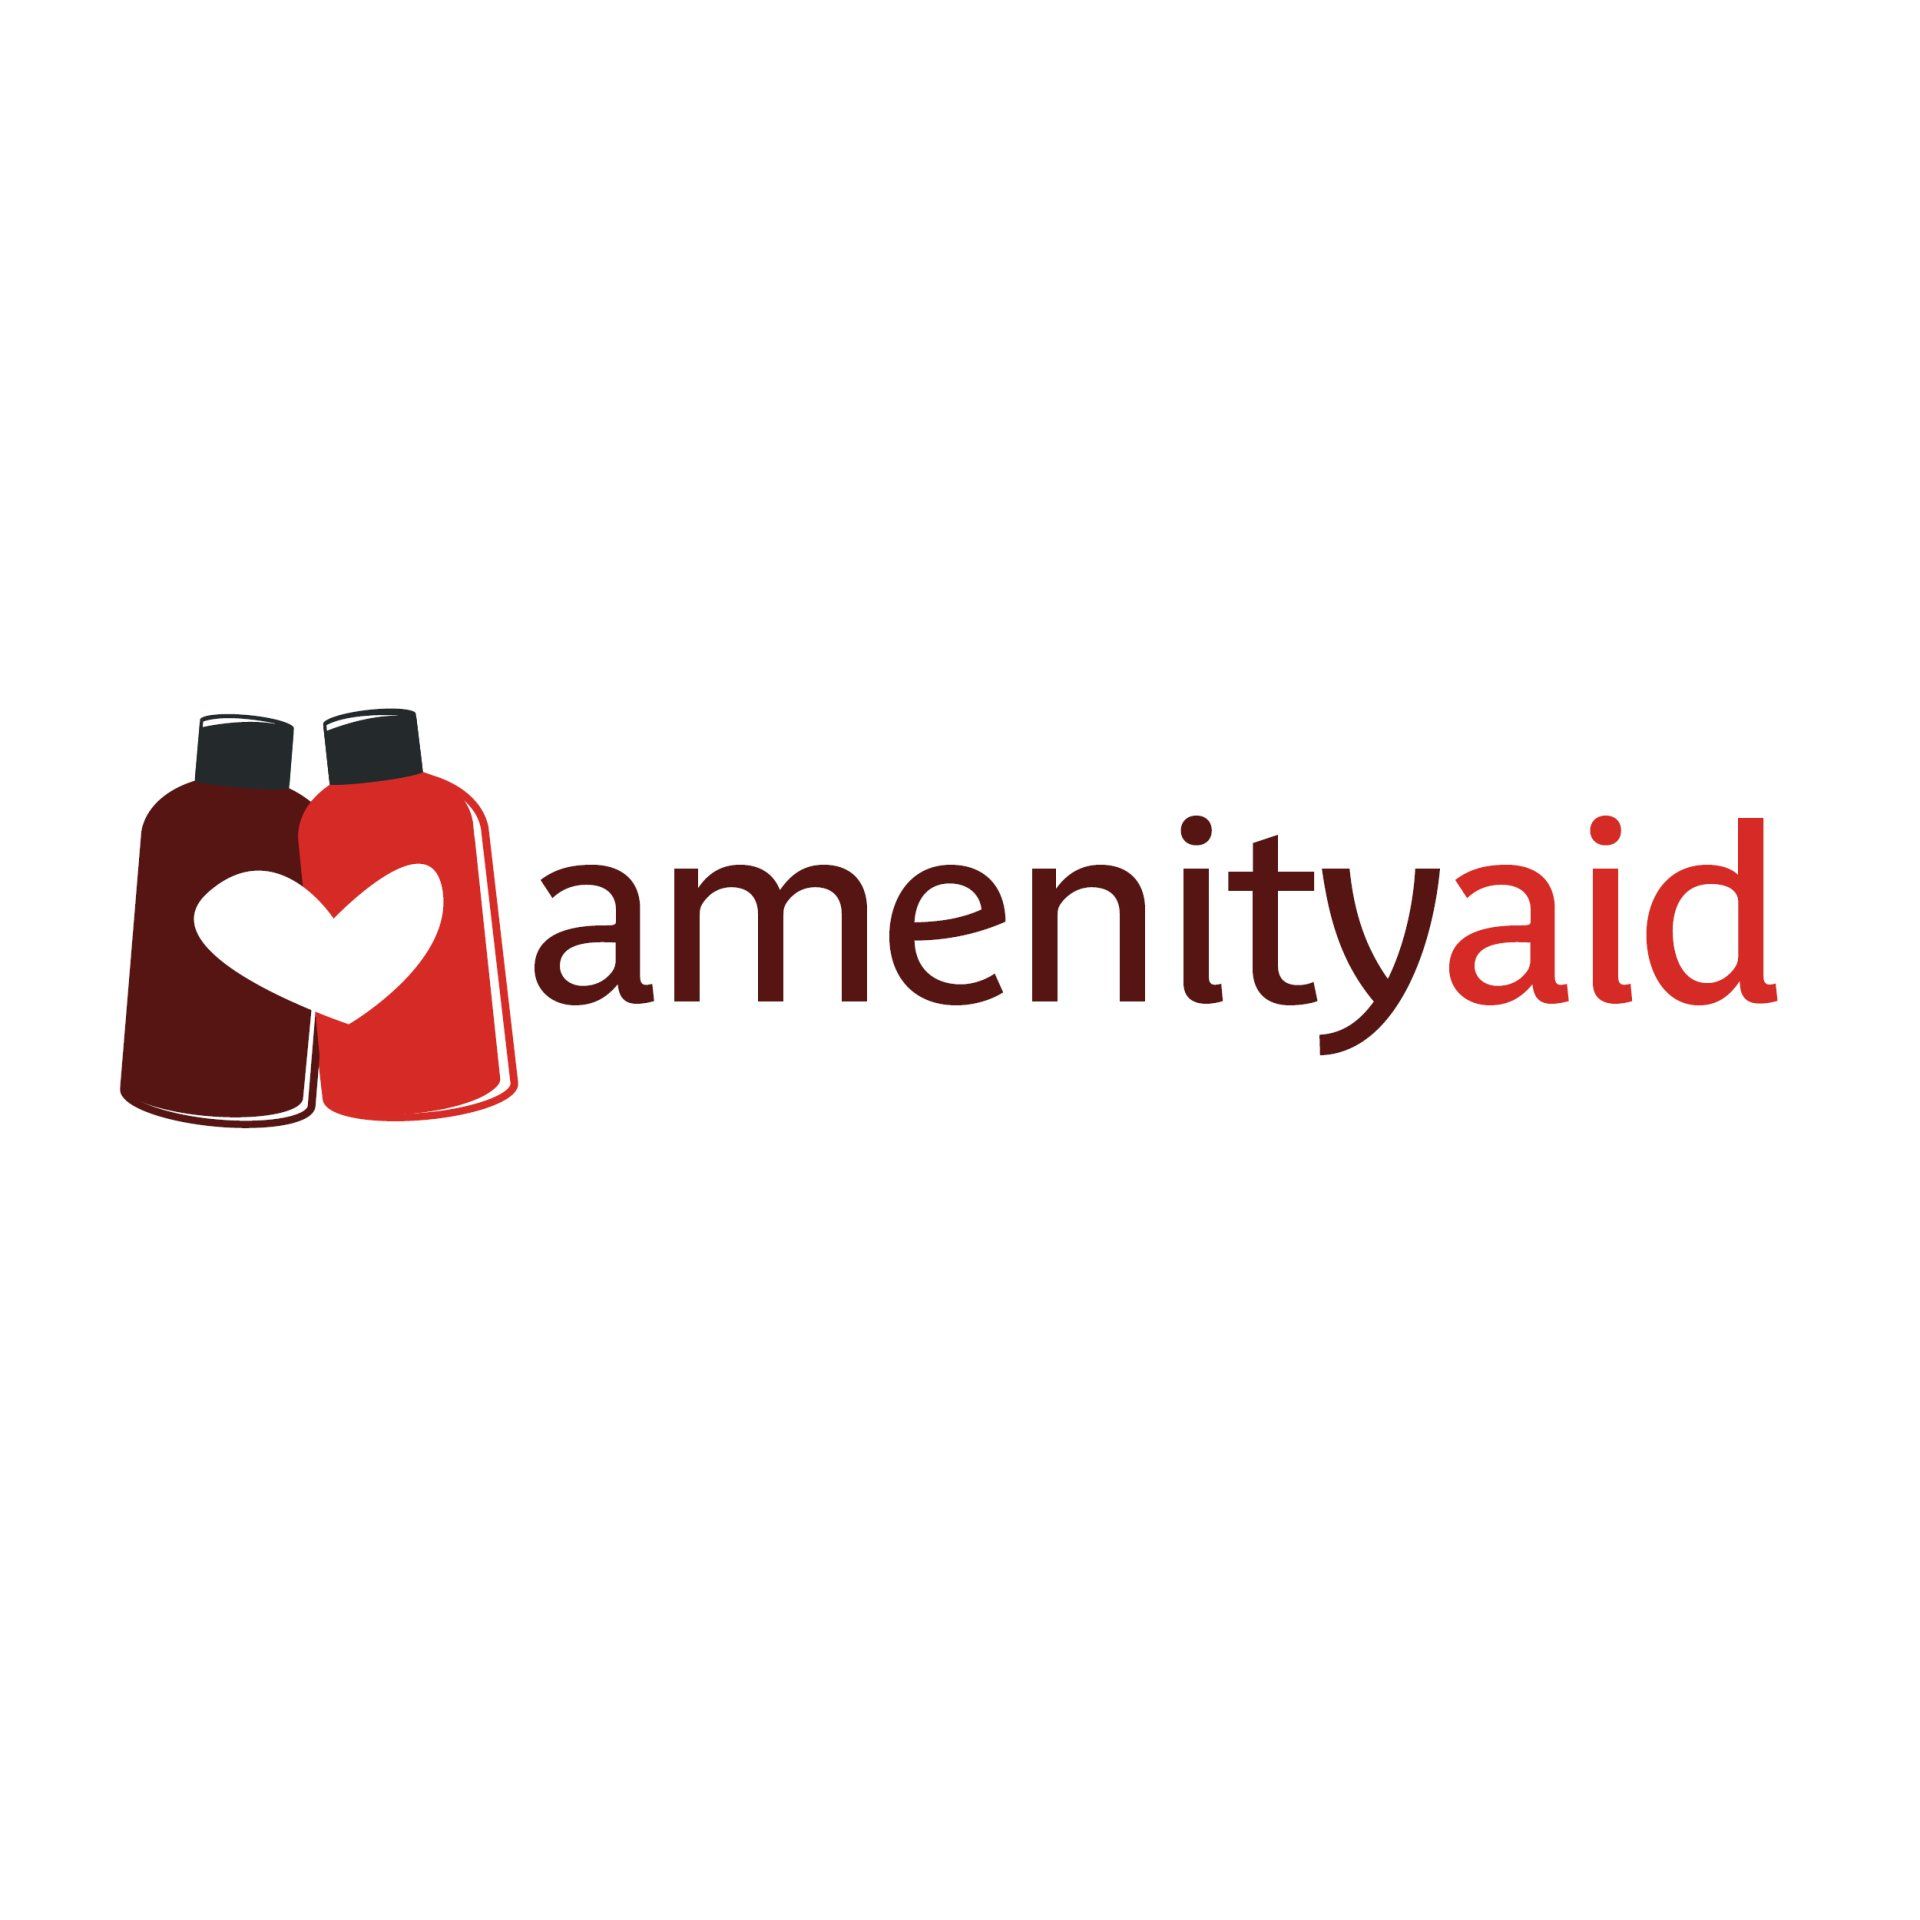 amenity aid logo